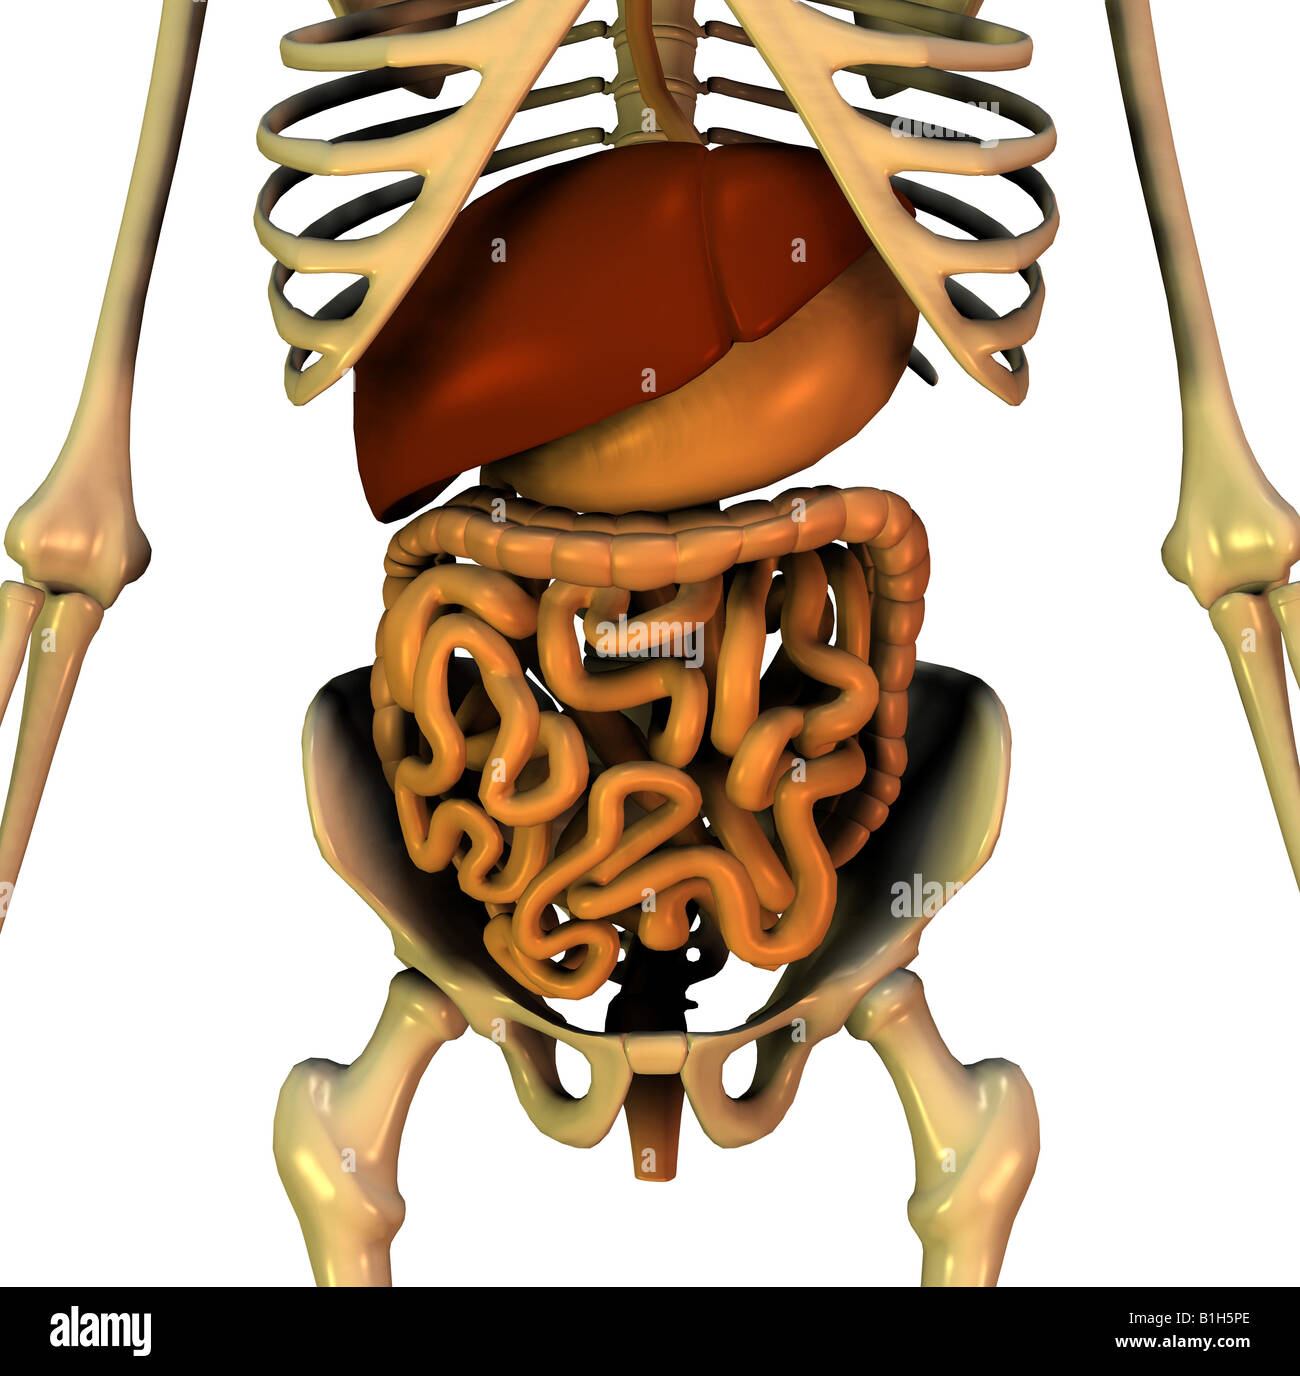 Anatomie du foie digestion pelvienne Banque D'Images